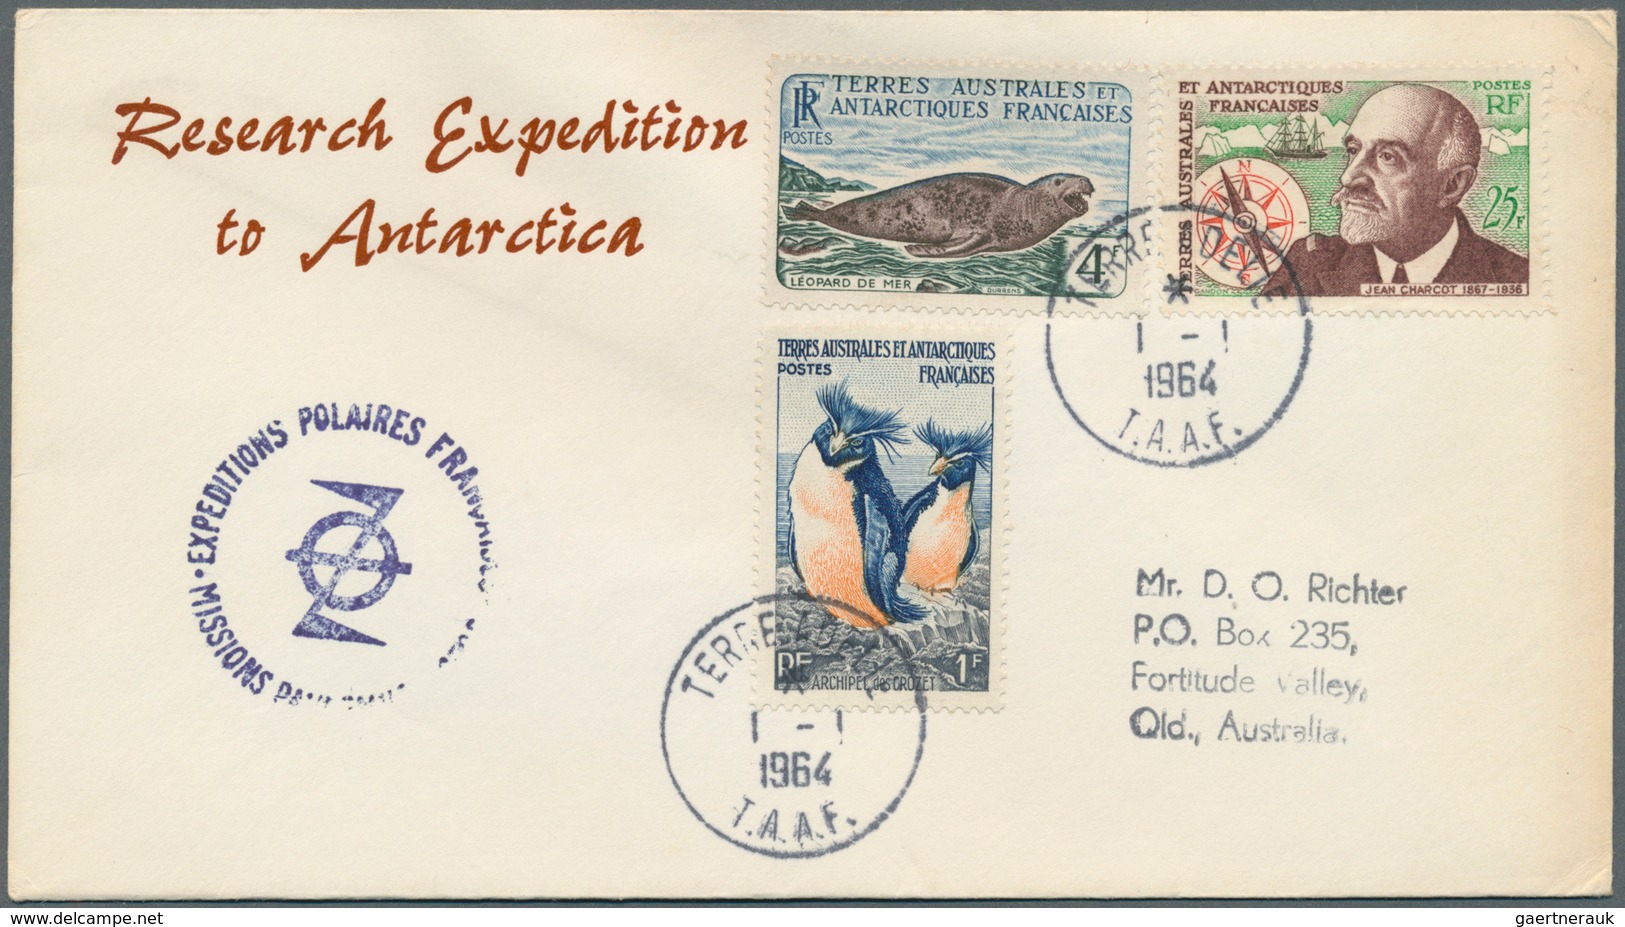 22594 Französische Gebiete in der Antarktis: 1960/2002, accumulation of apprx. 180 covers, good range of a